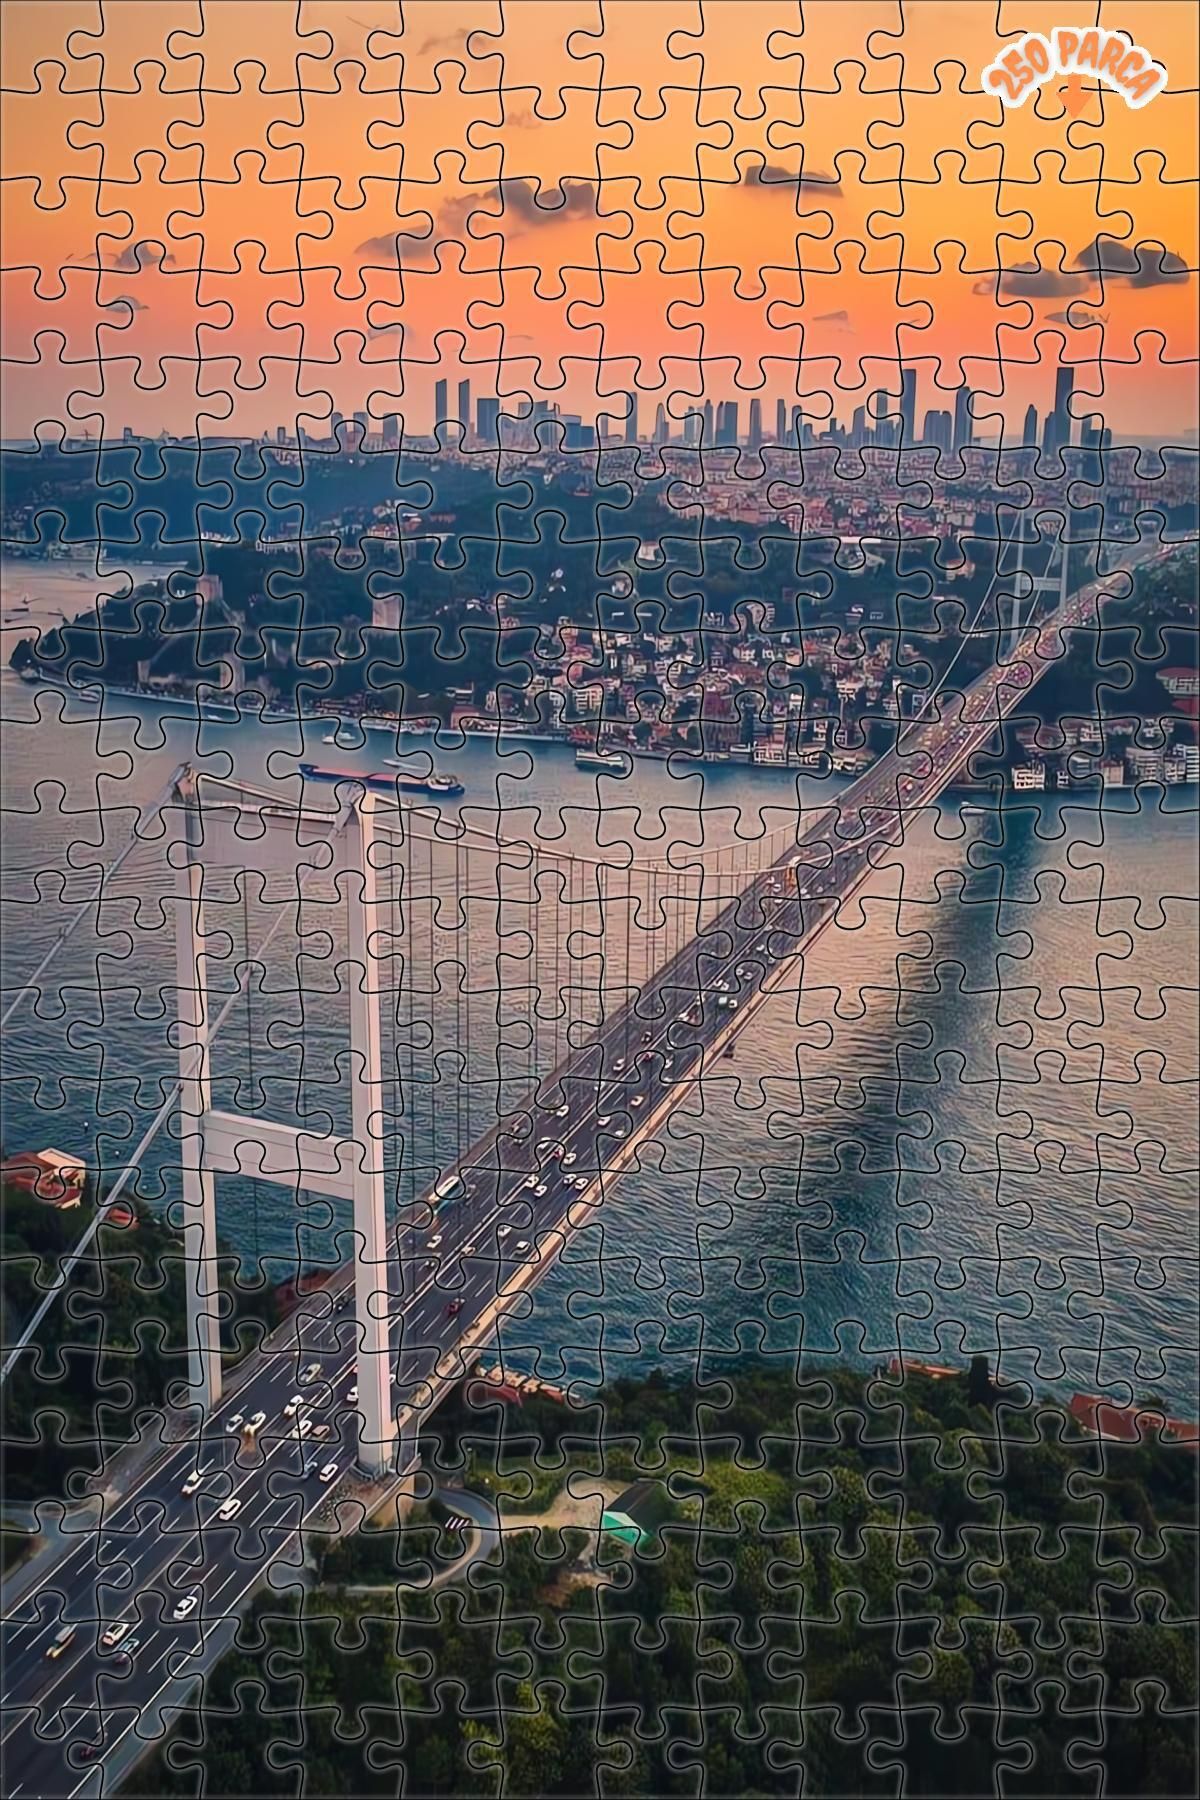 Teona Ahşap İstanbul Boğazı Dekoratif Çift Katlı Çerçeveli Asılabilir Ahşap Puzzle 250 PARÇA 30X30